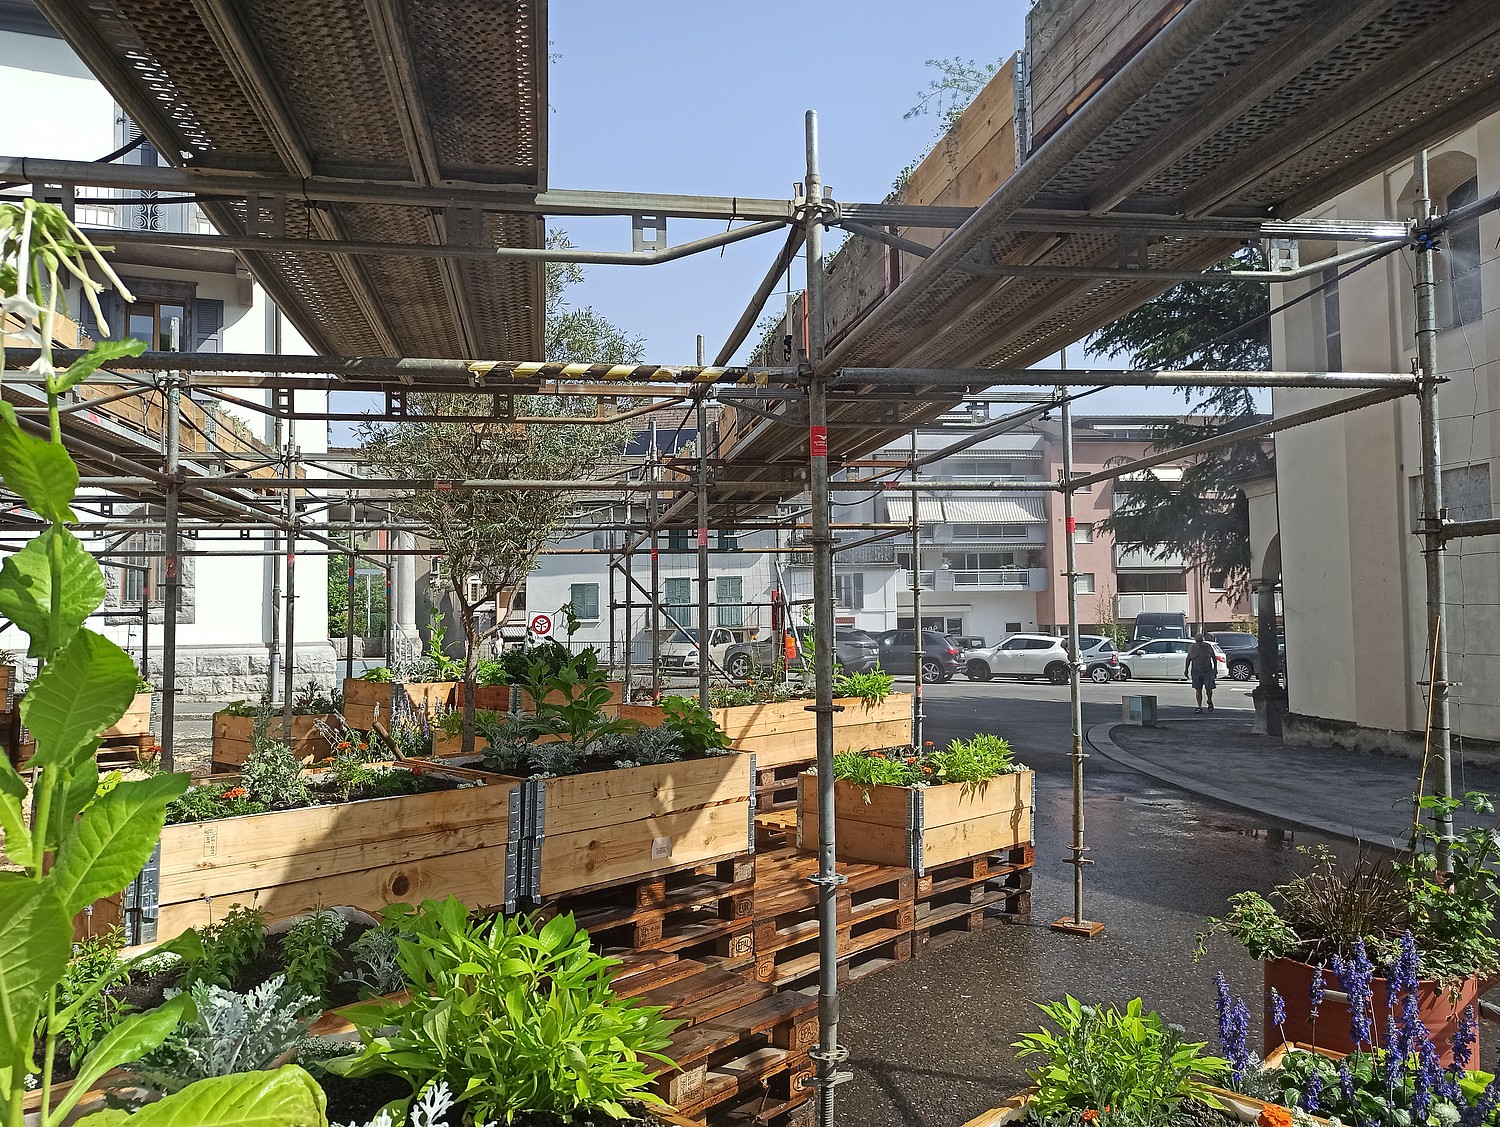 Le jardin éphémère, projet phare de Month®ey la voie, est une installation regroupant quelque 800 plantes qui a pour vocation de sensibiliser la population à l’importance de la nature en milieu urbain.